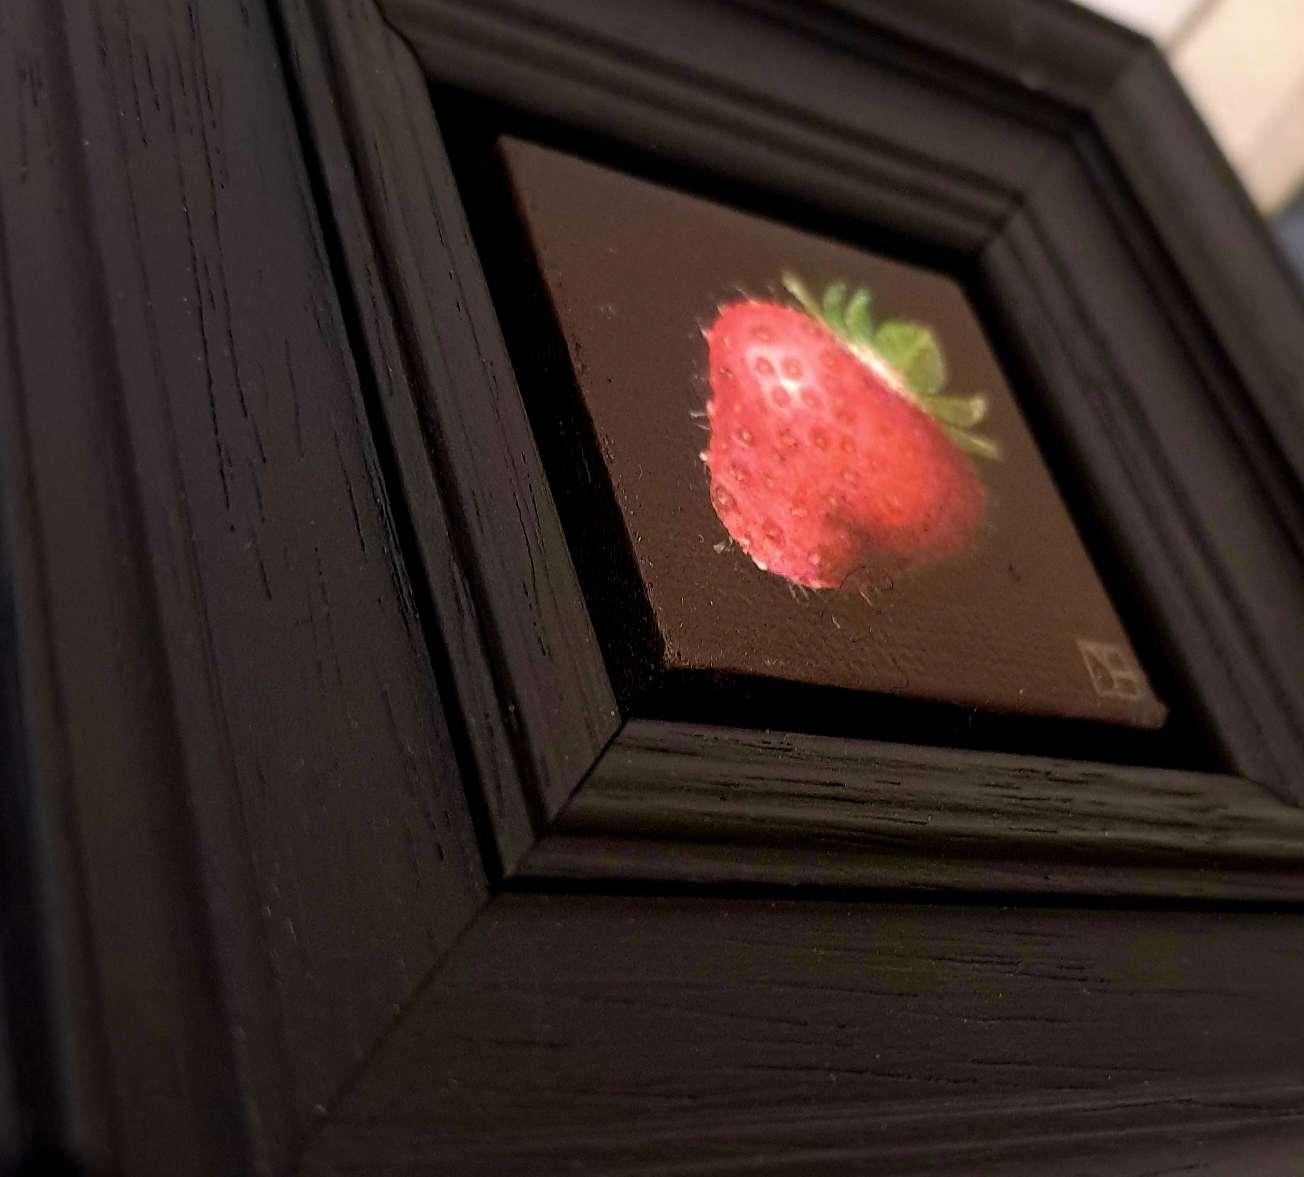 Pocket Very Ripe Strawberry ist ein Original-Ölgemälde von Dani Humberstone als Teil ihrer Pocket Painting-Serie, die realistische Ölgemälde in kleinem Maßstab mit einer Anspielung auf die barocke Stilllebenmalerei umfasst. Die Gemälde sind in einen